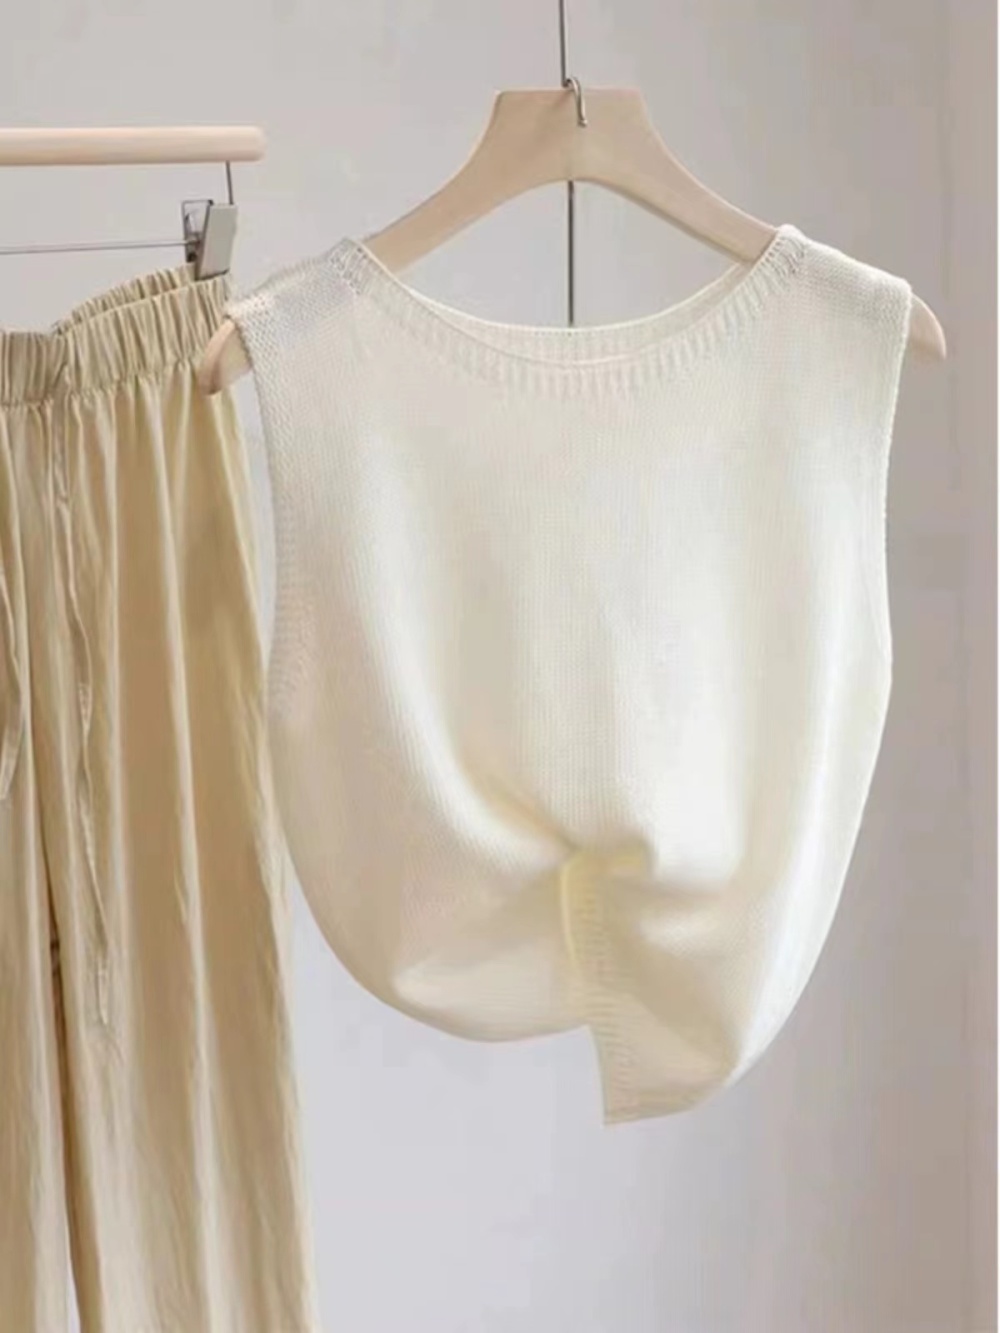 Ice silk France style tops sleeveless vest for women